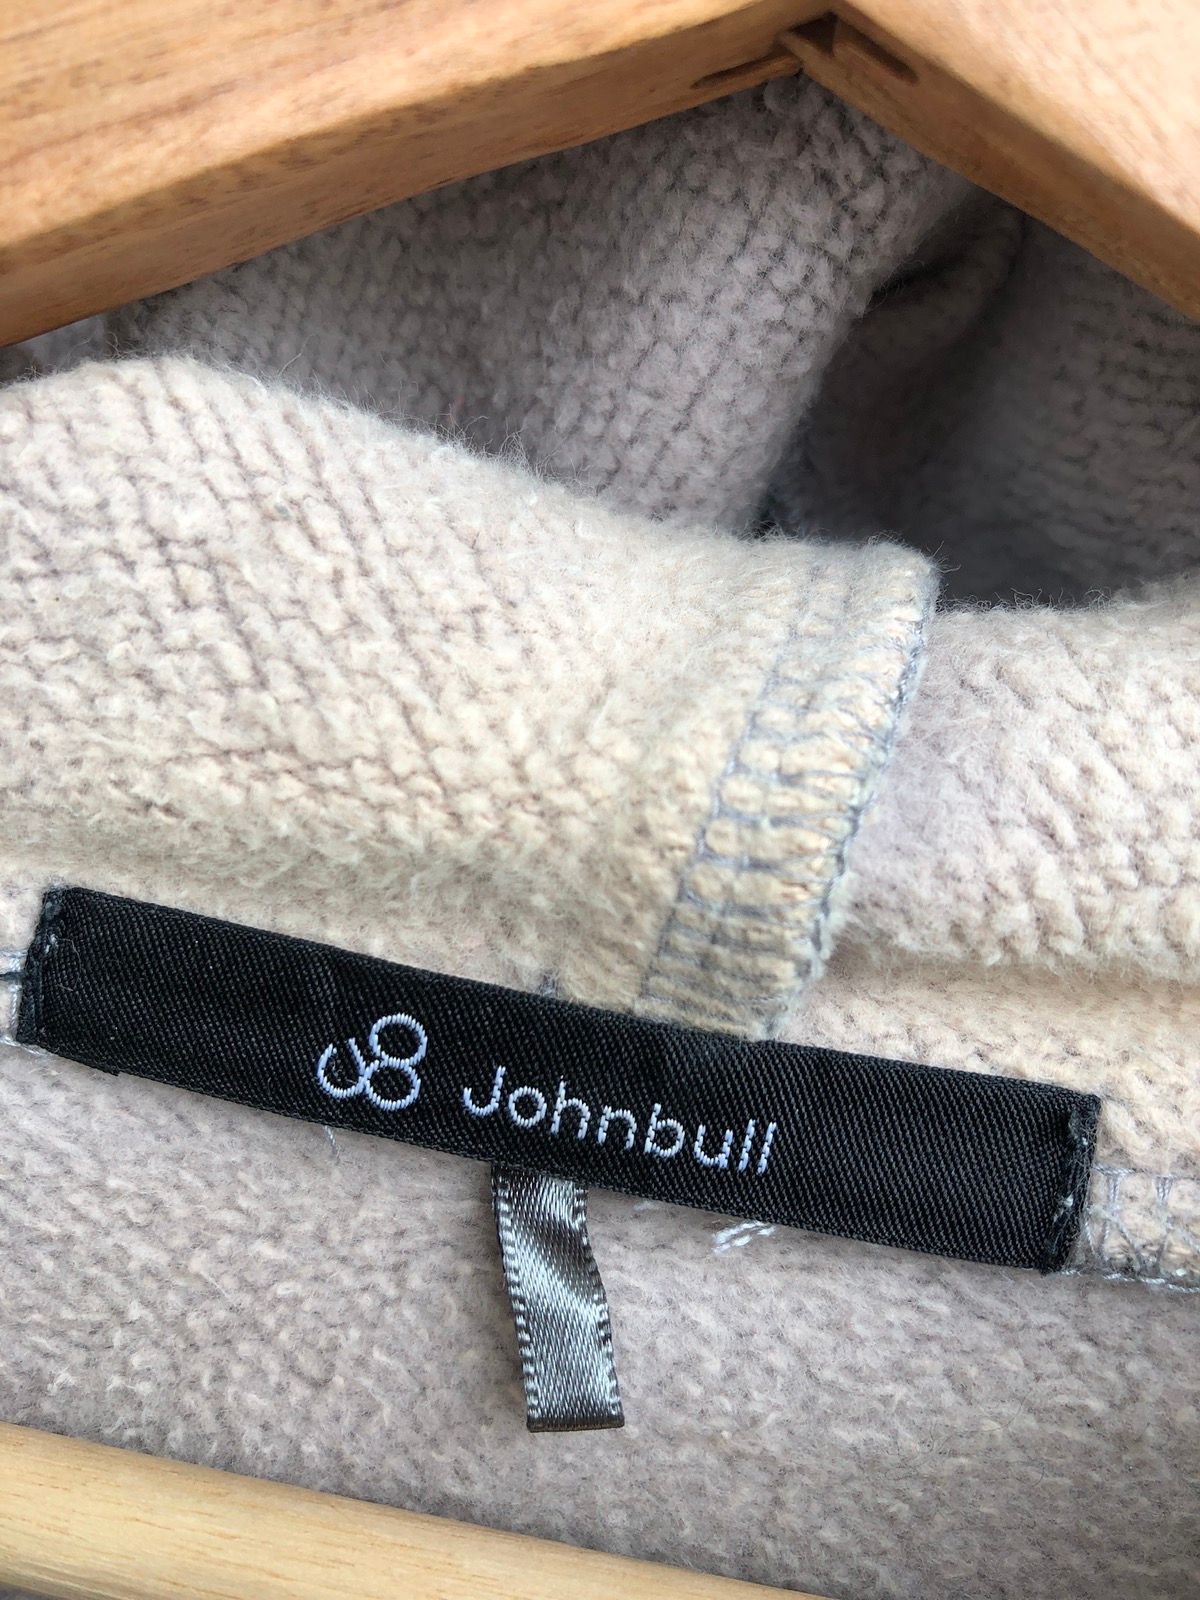 John Bull Johnbull Zipper Hoodie Size US M / EU 48-50 / 2 - 7 Thumbnail